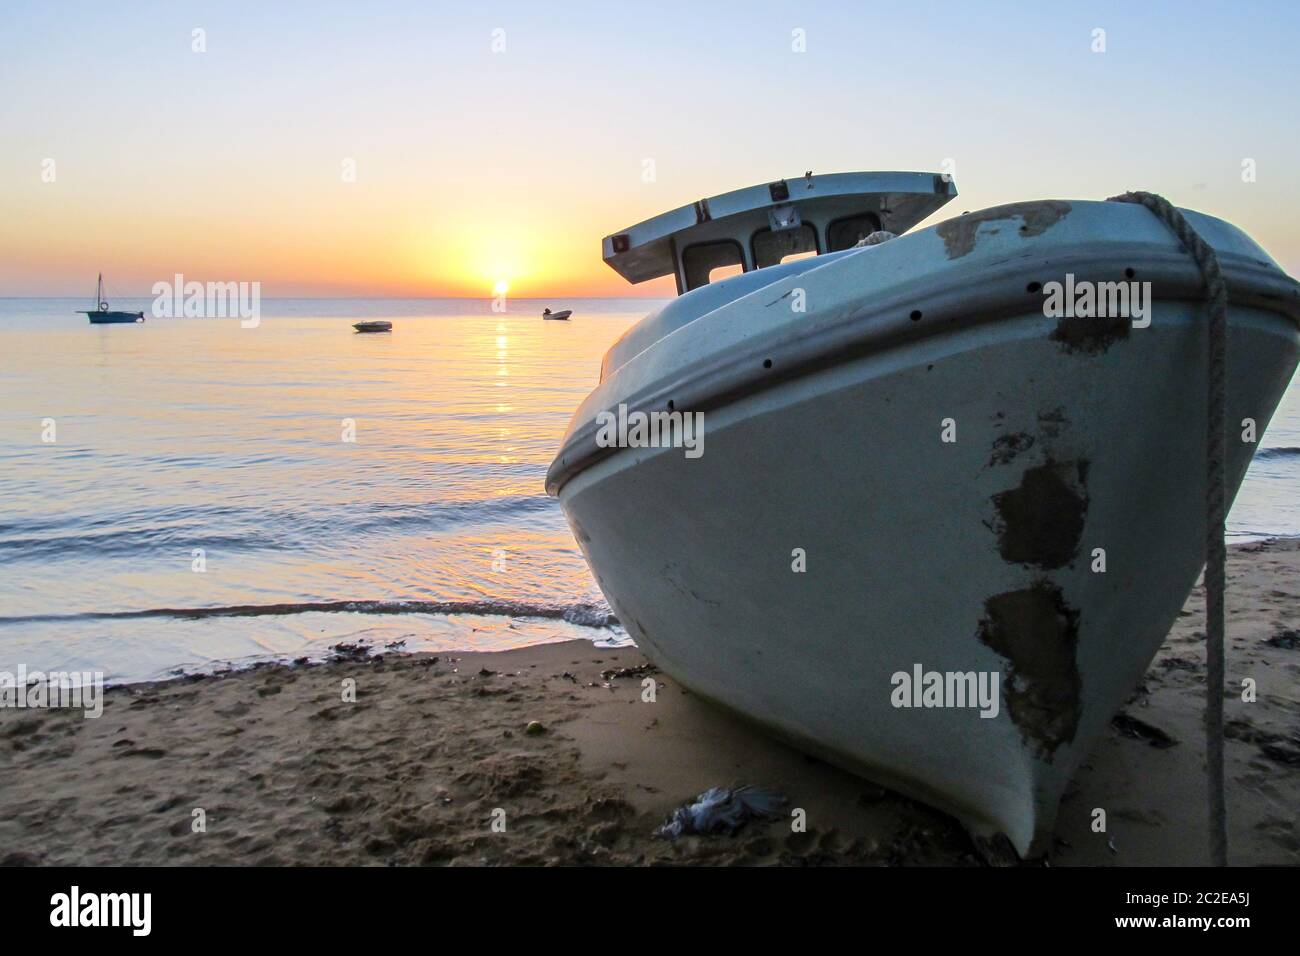 Ein Boot mit Strandpanzer, mit der ruhigen, geschützten Maputo Bay während der Dämmerung im Hintergrund, wie von der Insel Inhaca, Mosambik gesehen Stockfoto